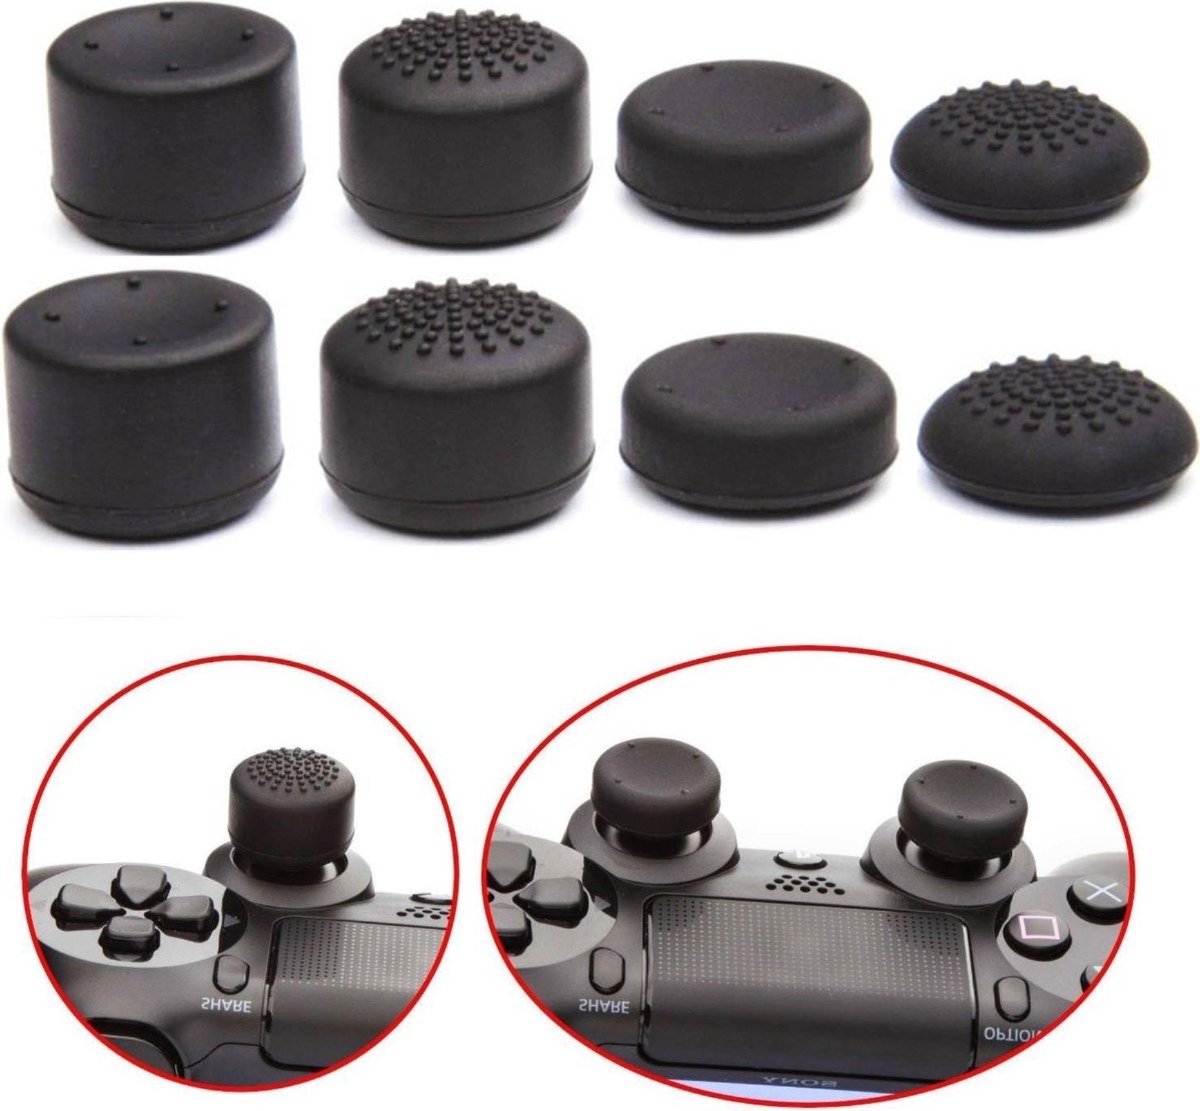 *** Pro gaming thumb grips - 8 stuks - geschikt voor Playstation 4 / PS5 accessoires Xbox - 4 maten - Console kit voor pro gamers - Thumbgrips voor optimale gaming ervaring - van Heble® ***